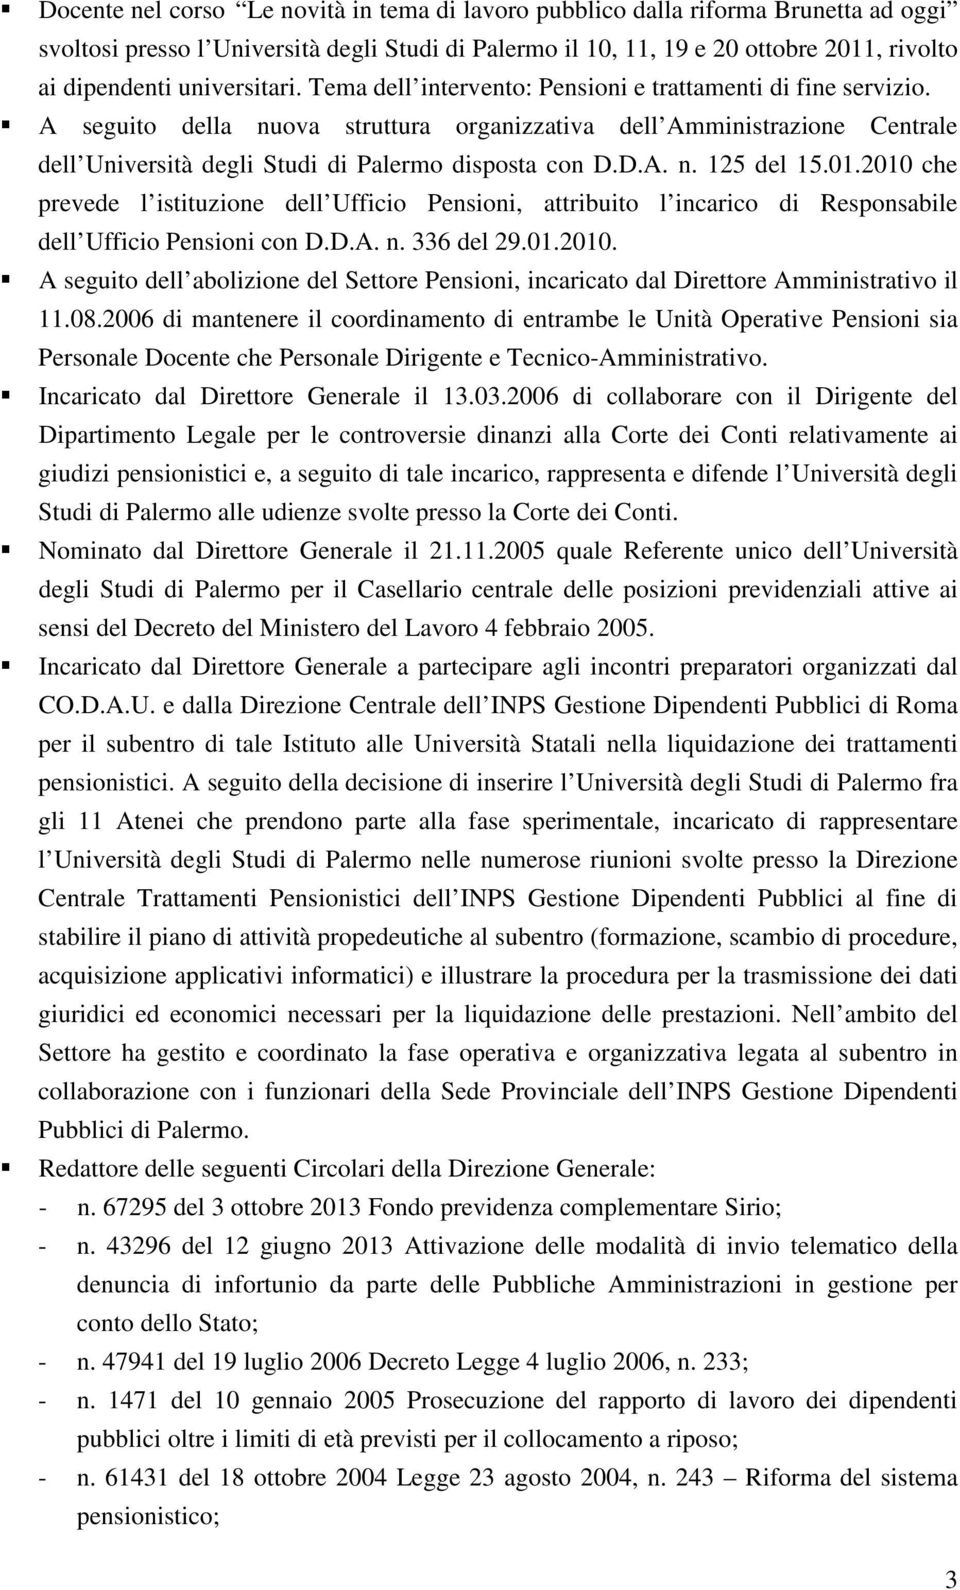 A seguito della nuova struttura organizzativa dell Amministrazione Centrale dell Università degli Studi di Palermo disposta con D.D.A. n. 125 del 15.01.